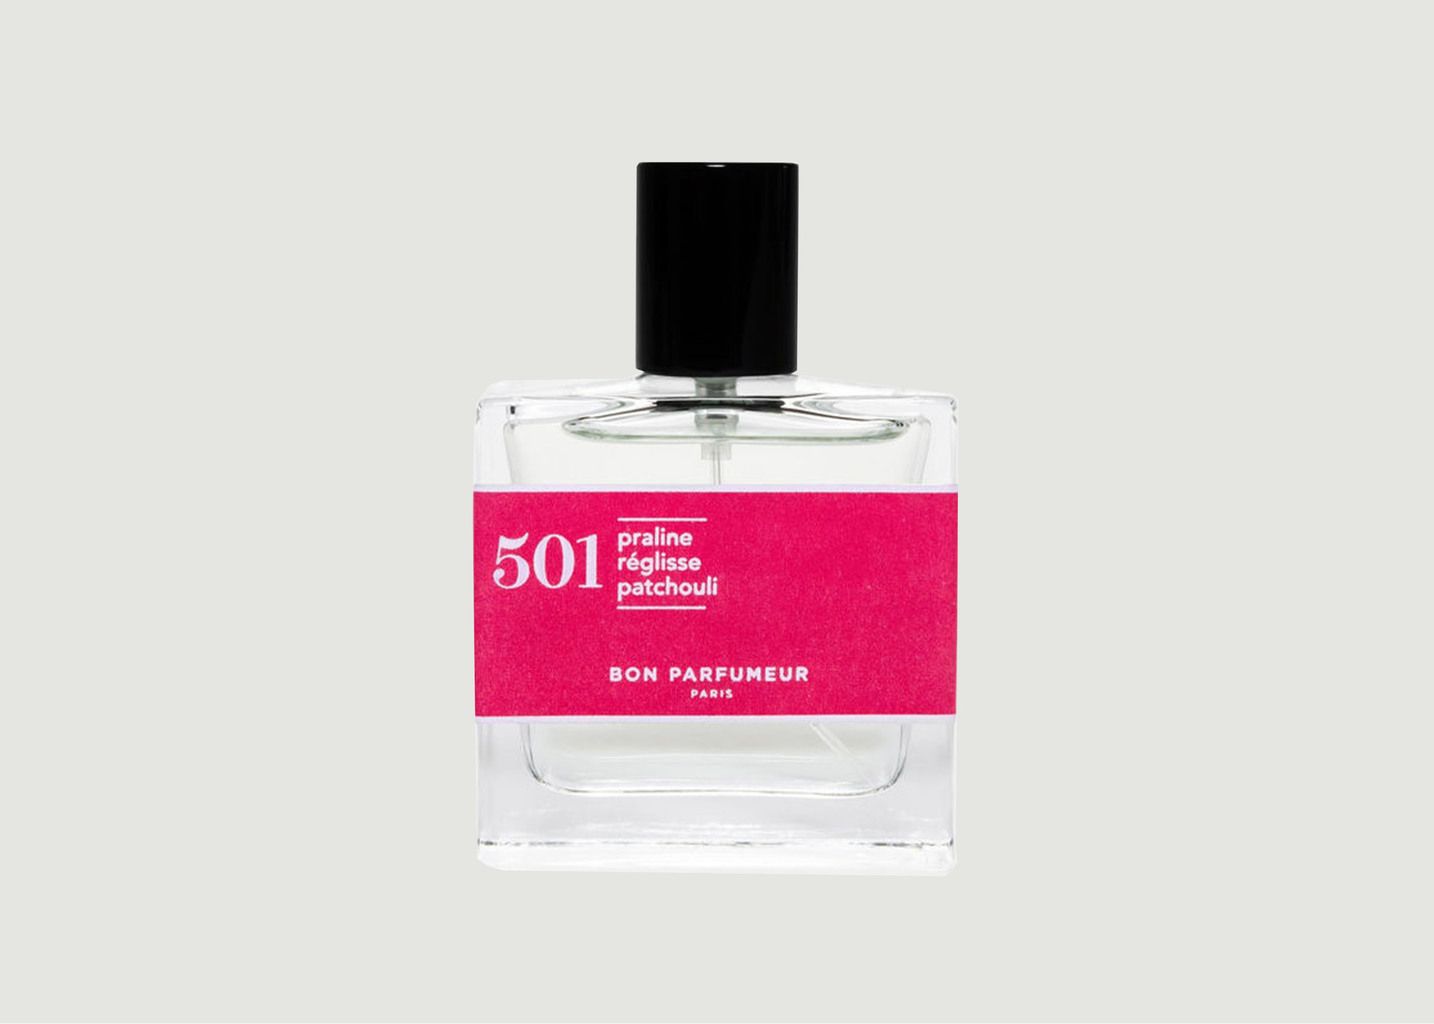 Eau de Parfum 501 : Praline, Licorice, Patchouli - Bon Parfumeur